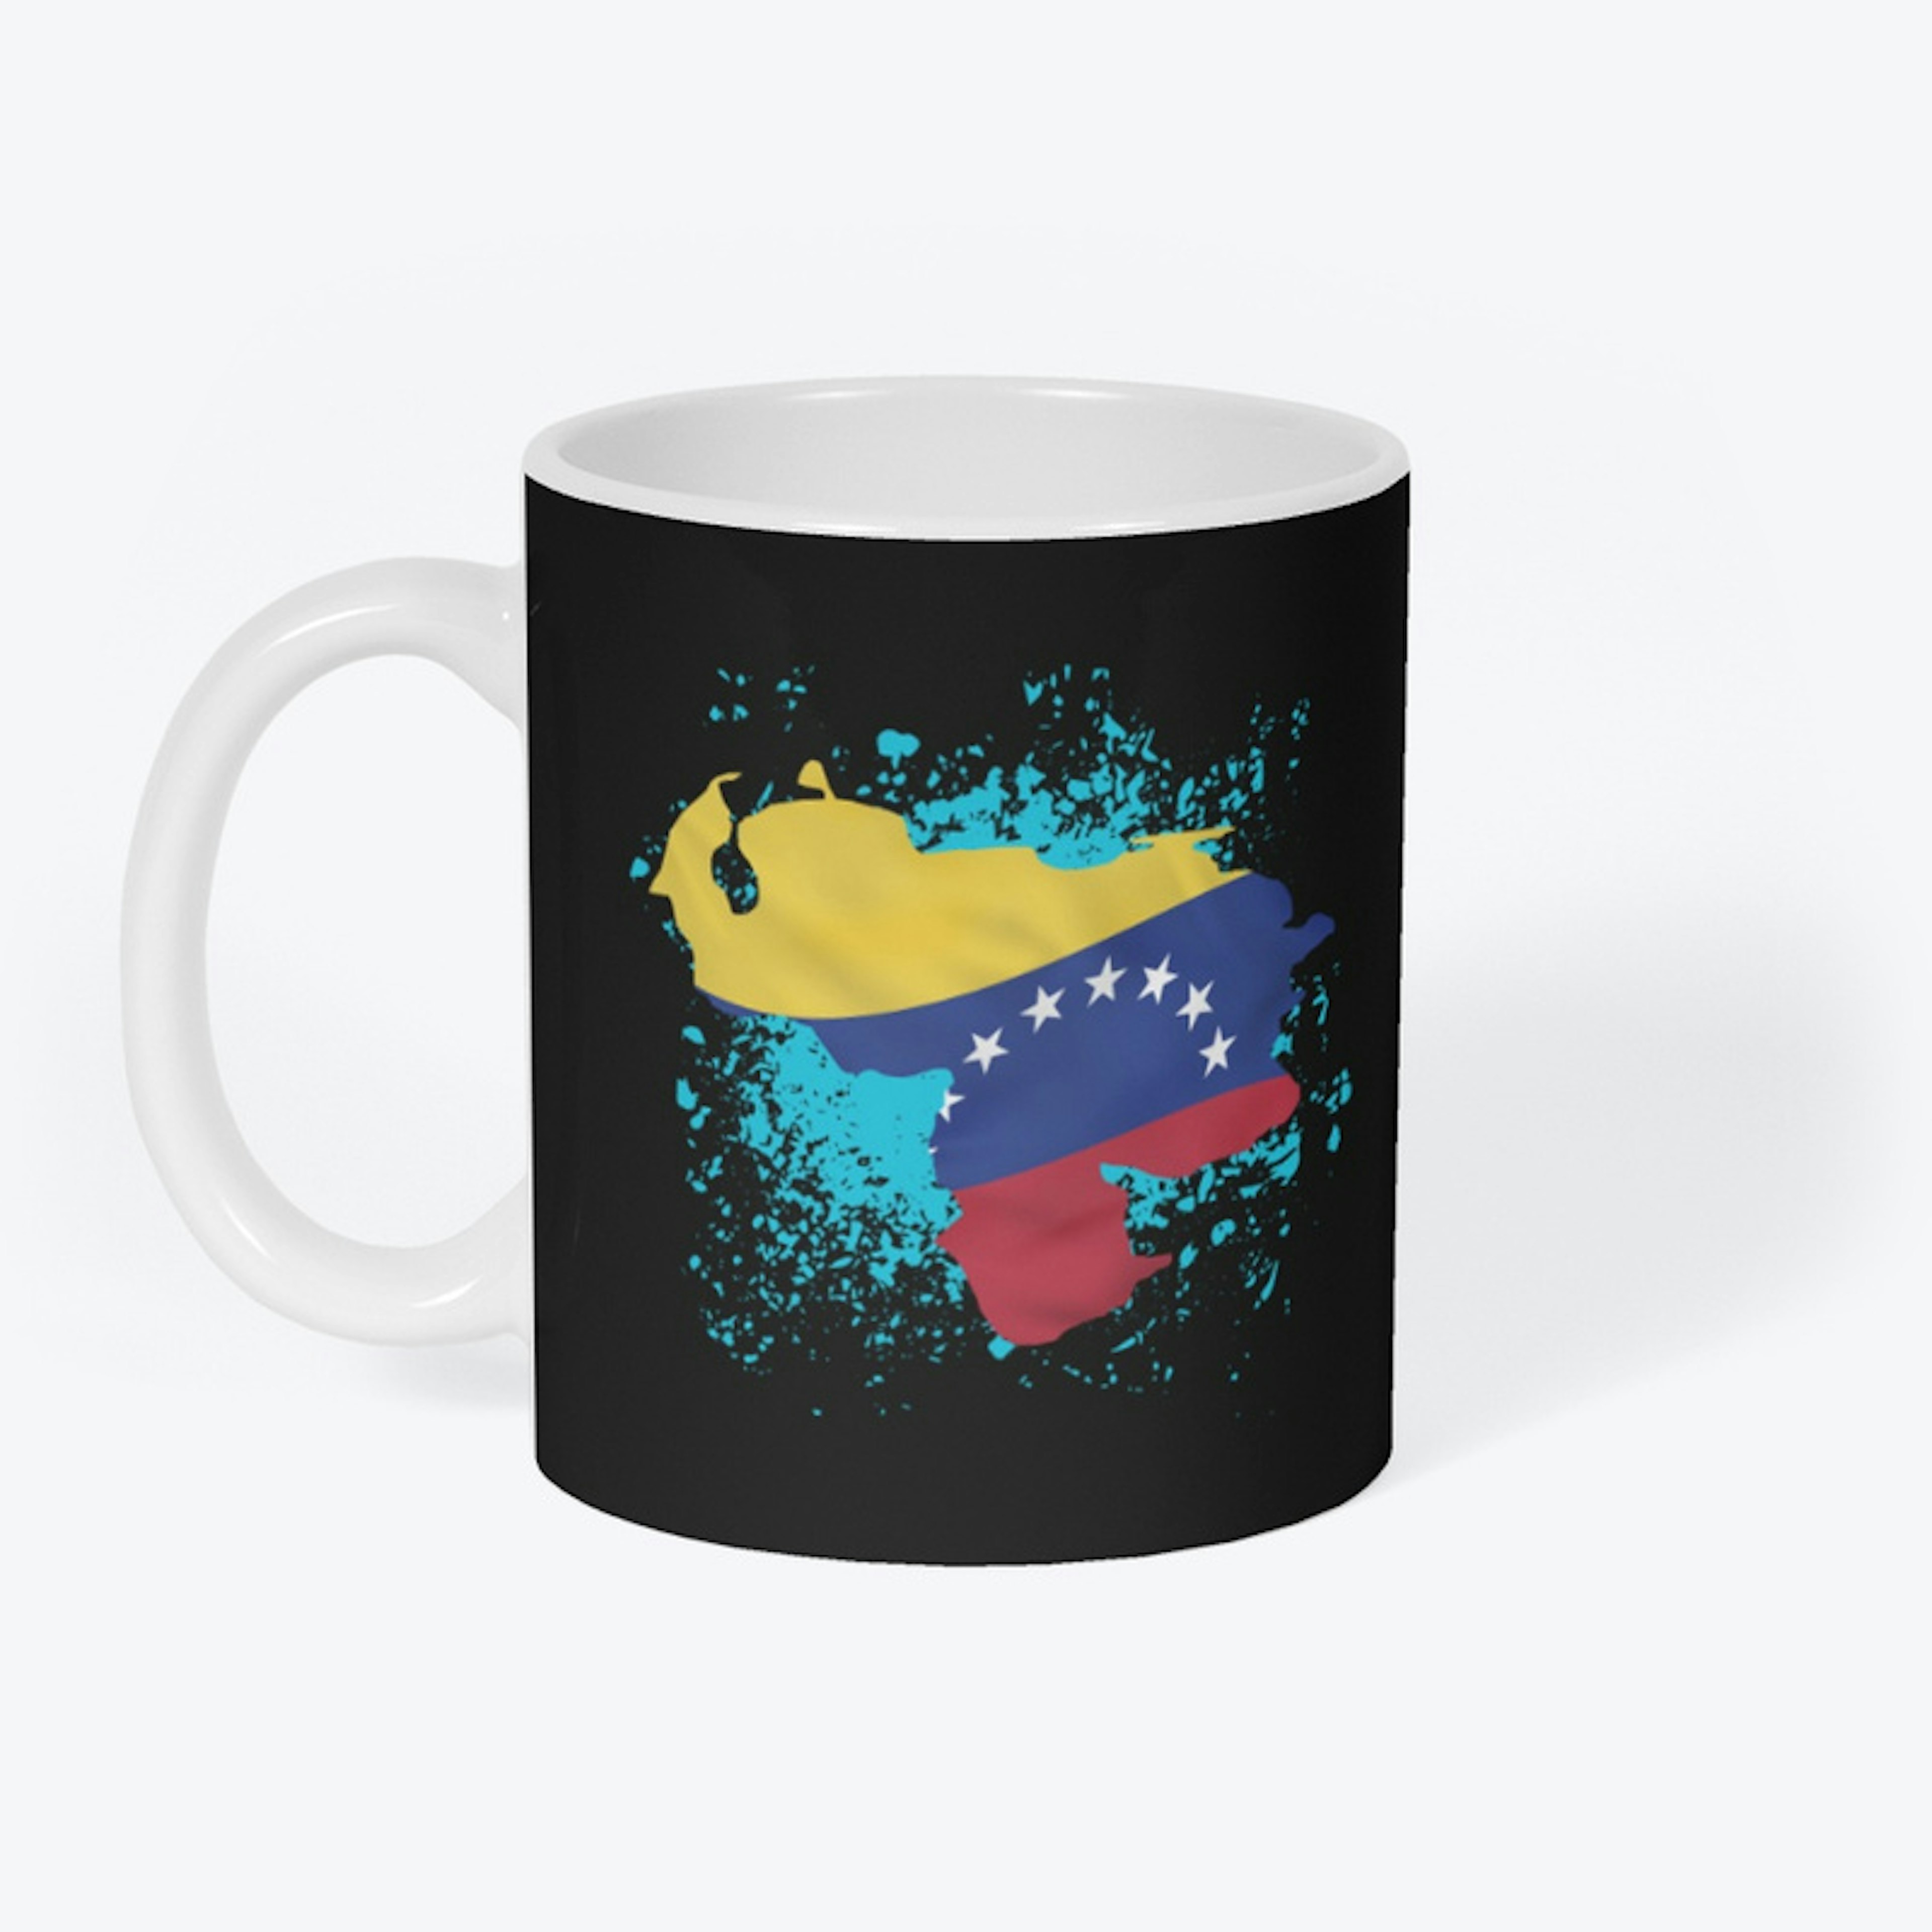 Country of Venezuela